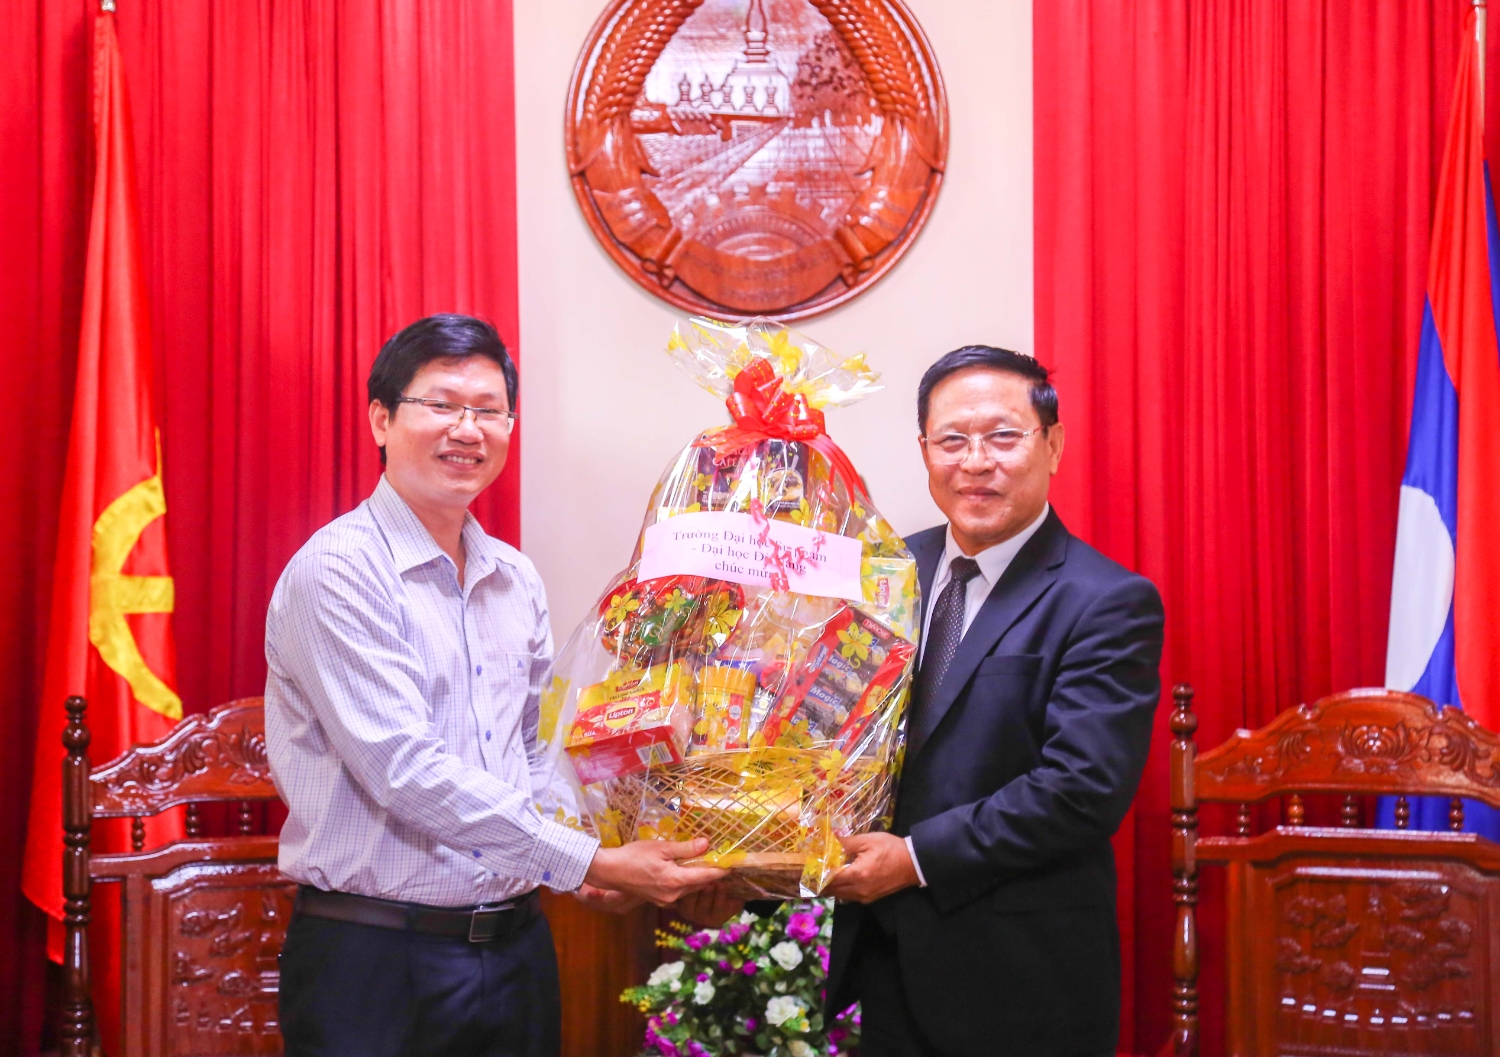 Trường Đại học Sư phạm thăm và chúc mừng Quốc khánh CHDCND Lào